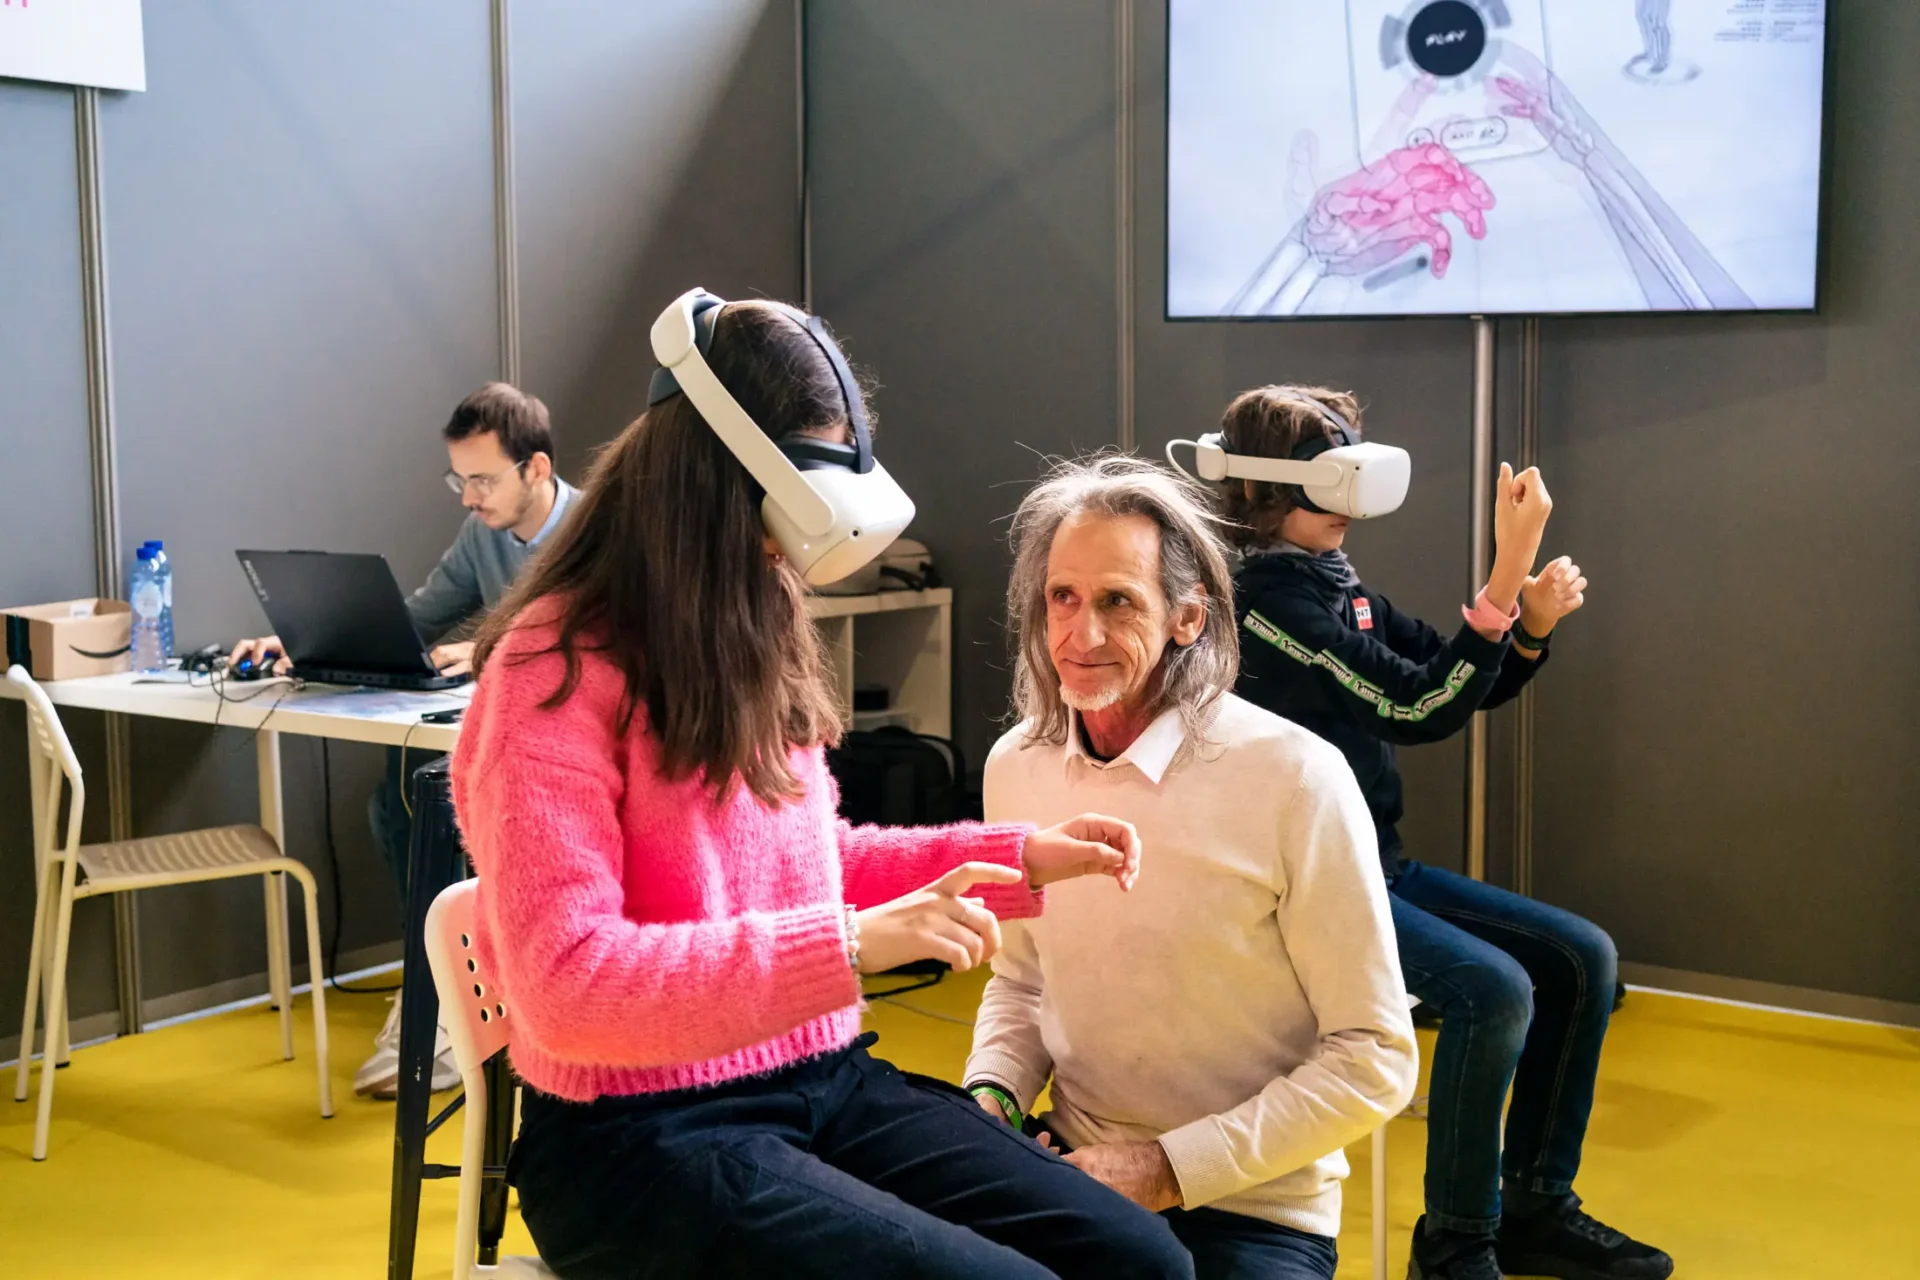 Un homme assiste une jeune fille à la réalité virtuelle au I love science festival, Bruxelles